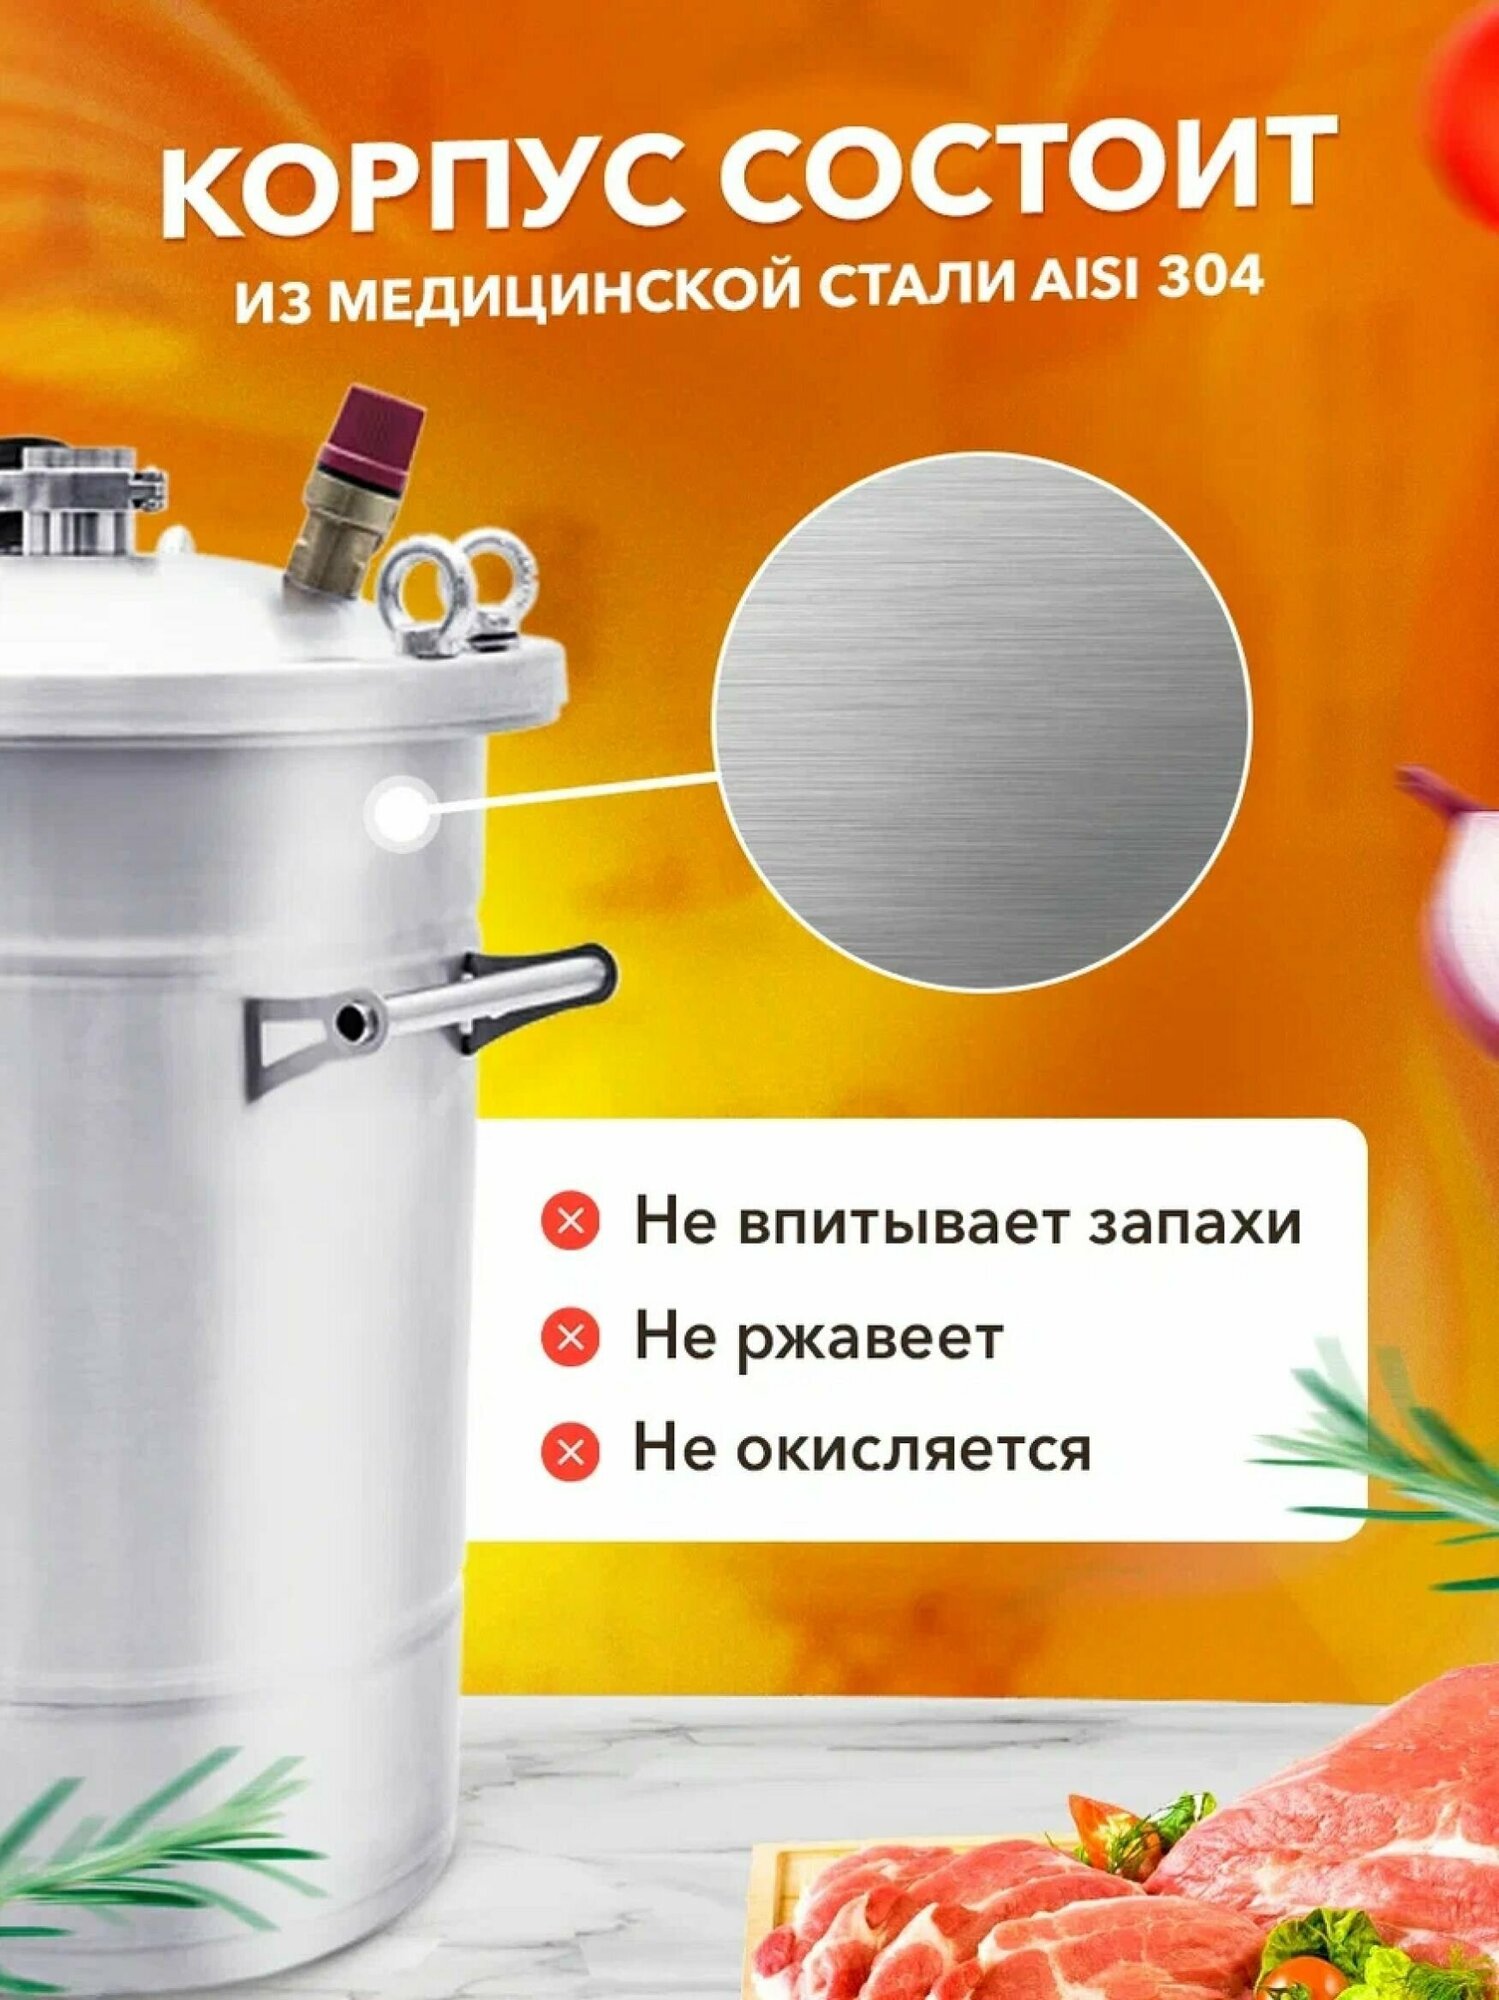 Автоклав Крестьянка 13 л + ТЭН для домашнего консервирования